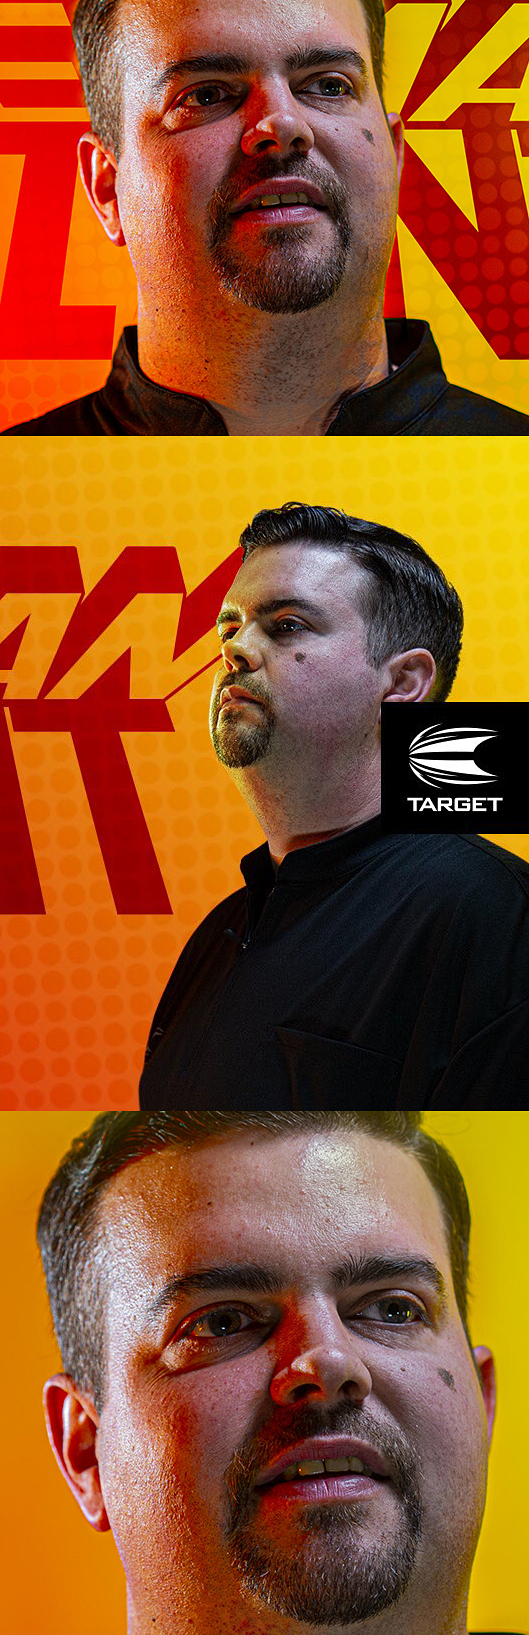 Target Dart neuer Gabriel Clemens Dart Neuheit 2020 im GOKarli Dartshop pünktlich zu seine Erfolgen in der German Darts Superleague